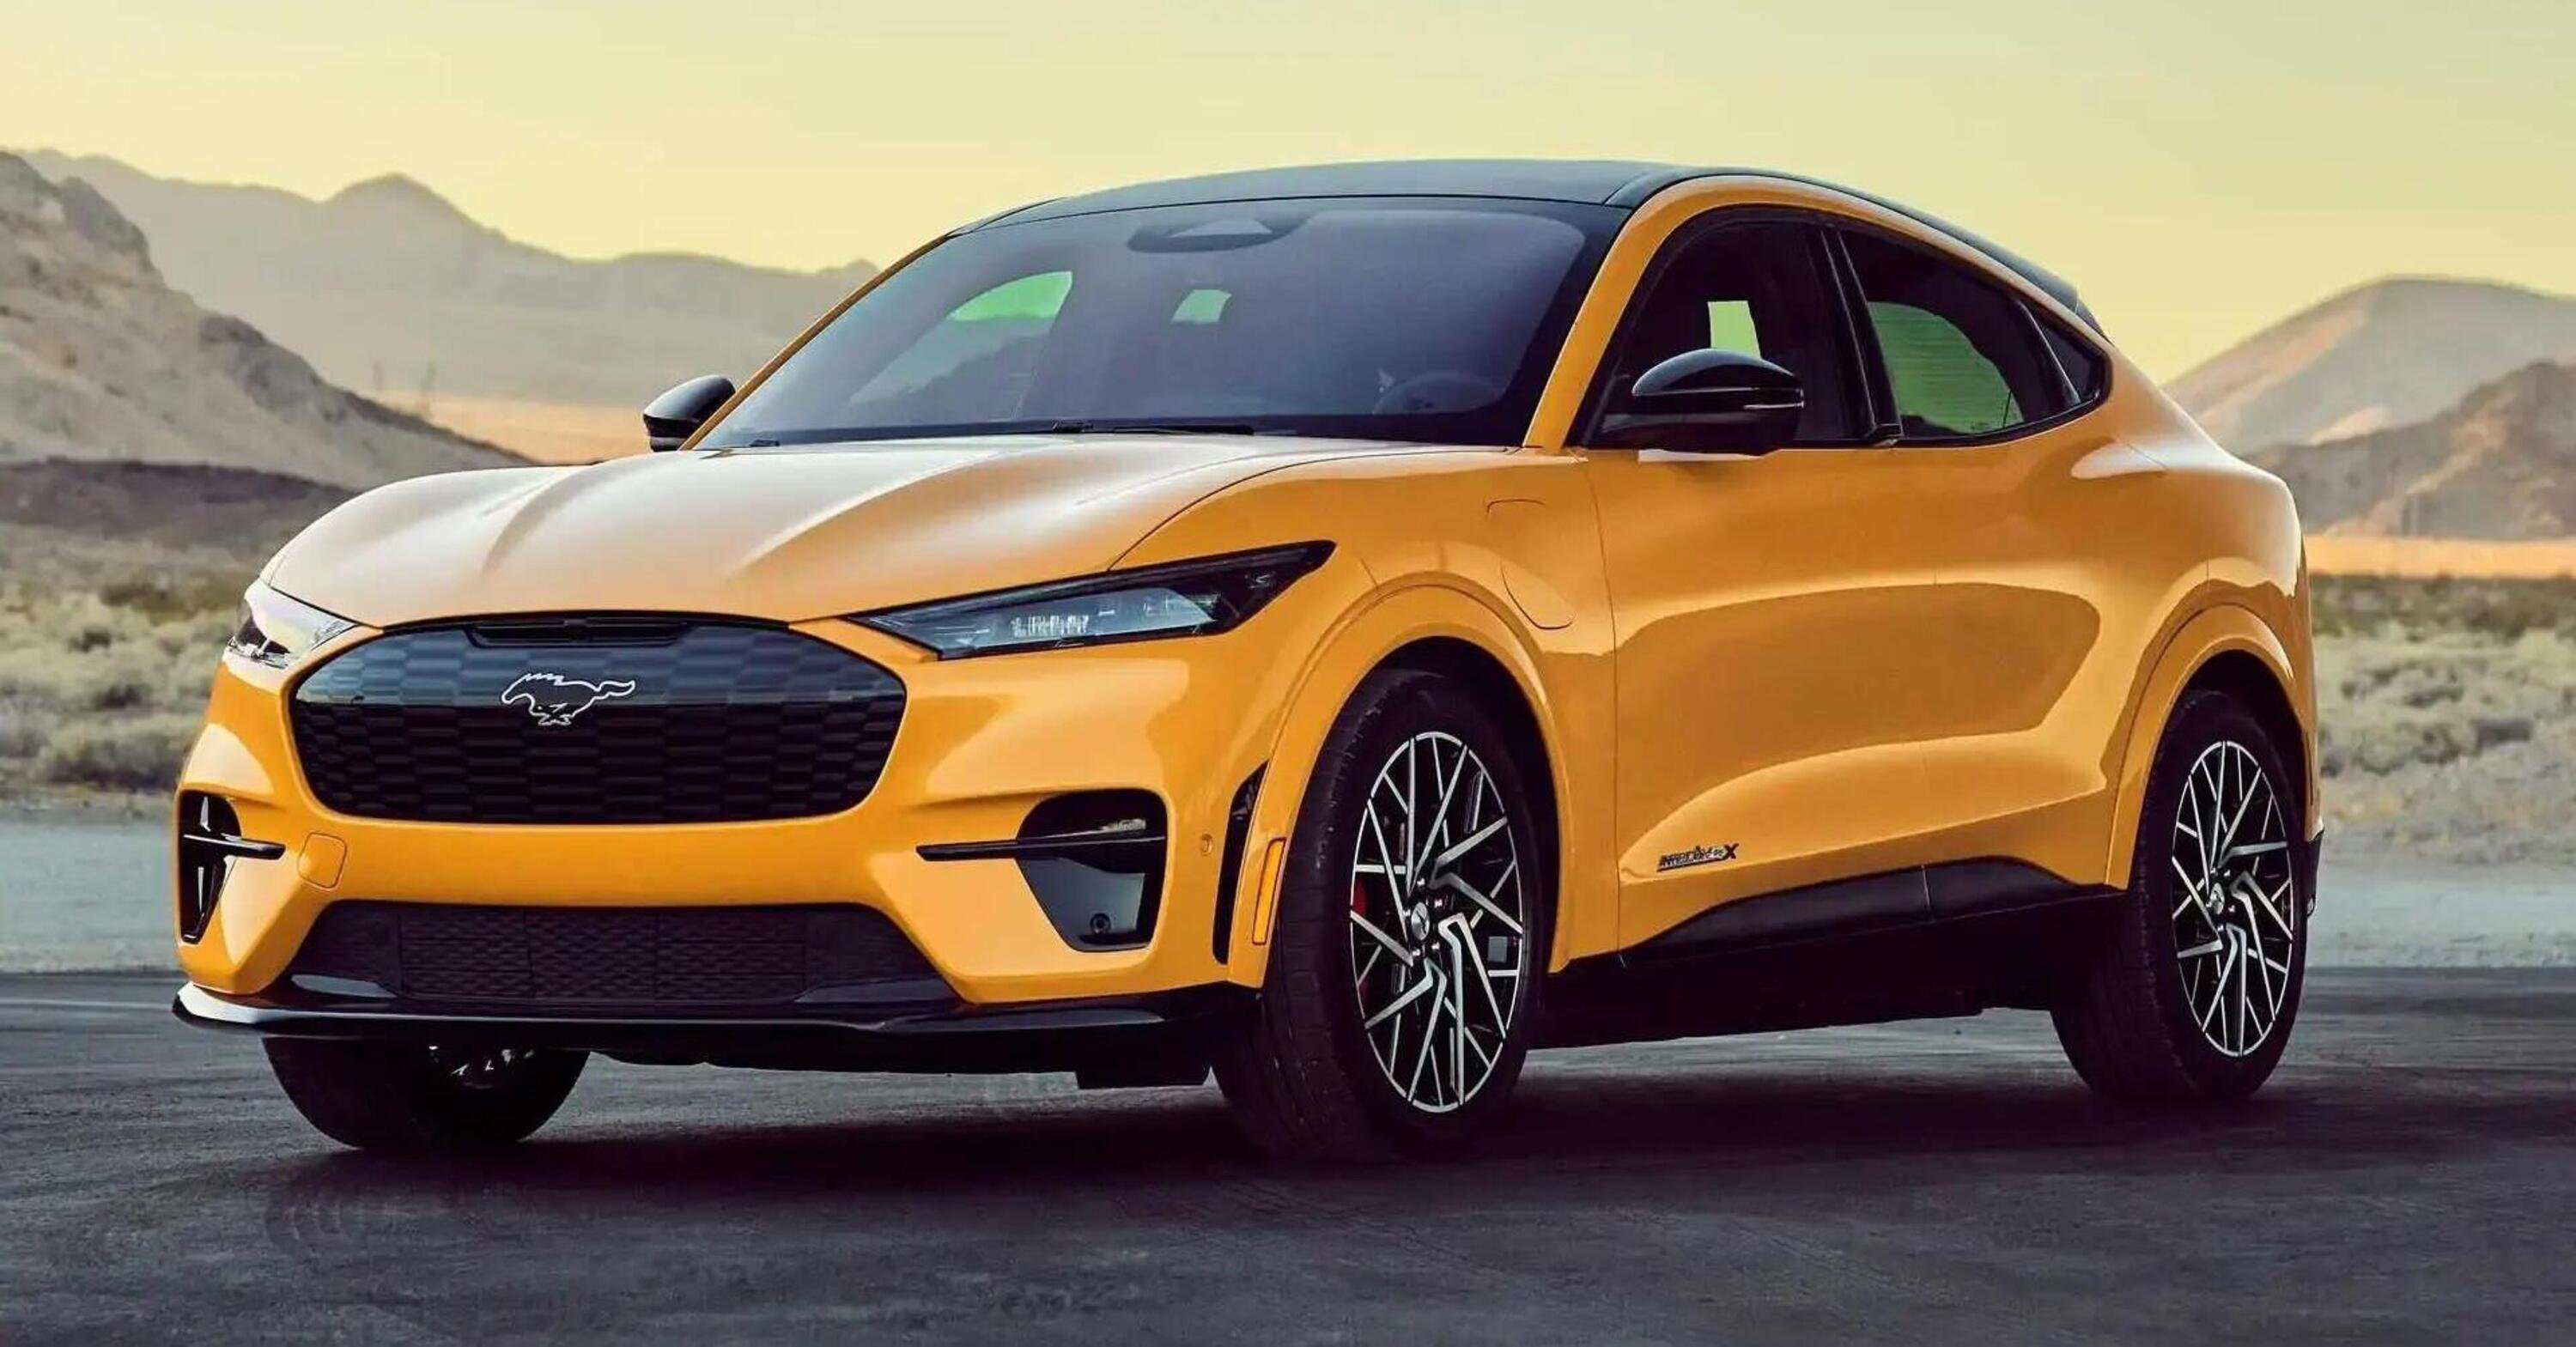 Ford taglia i prezzi della Mustang Mach-e, come Tesla